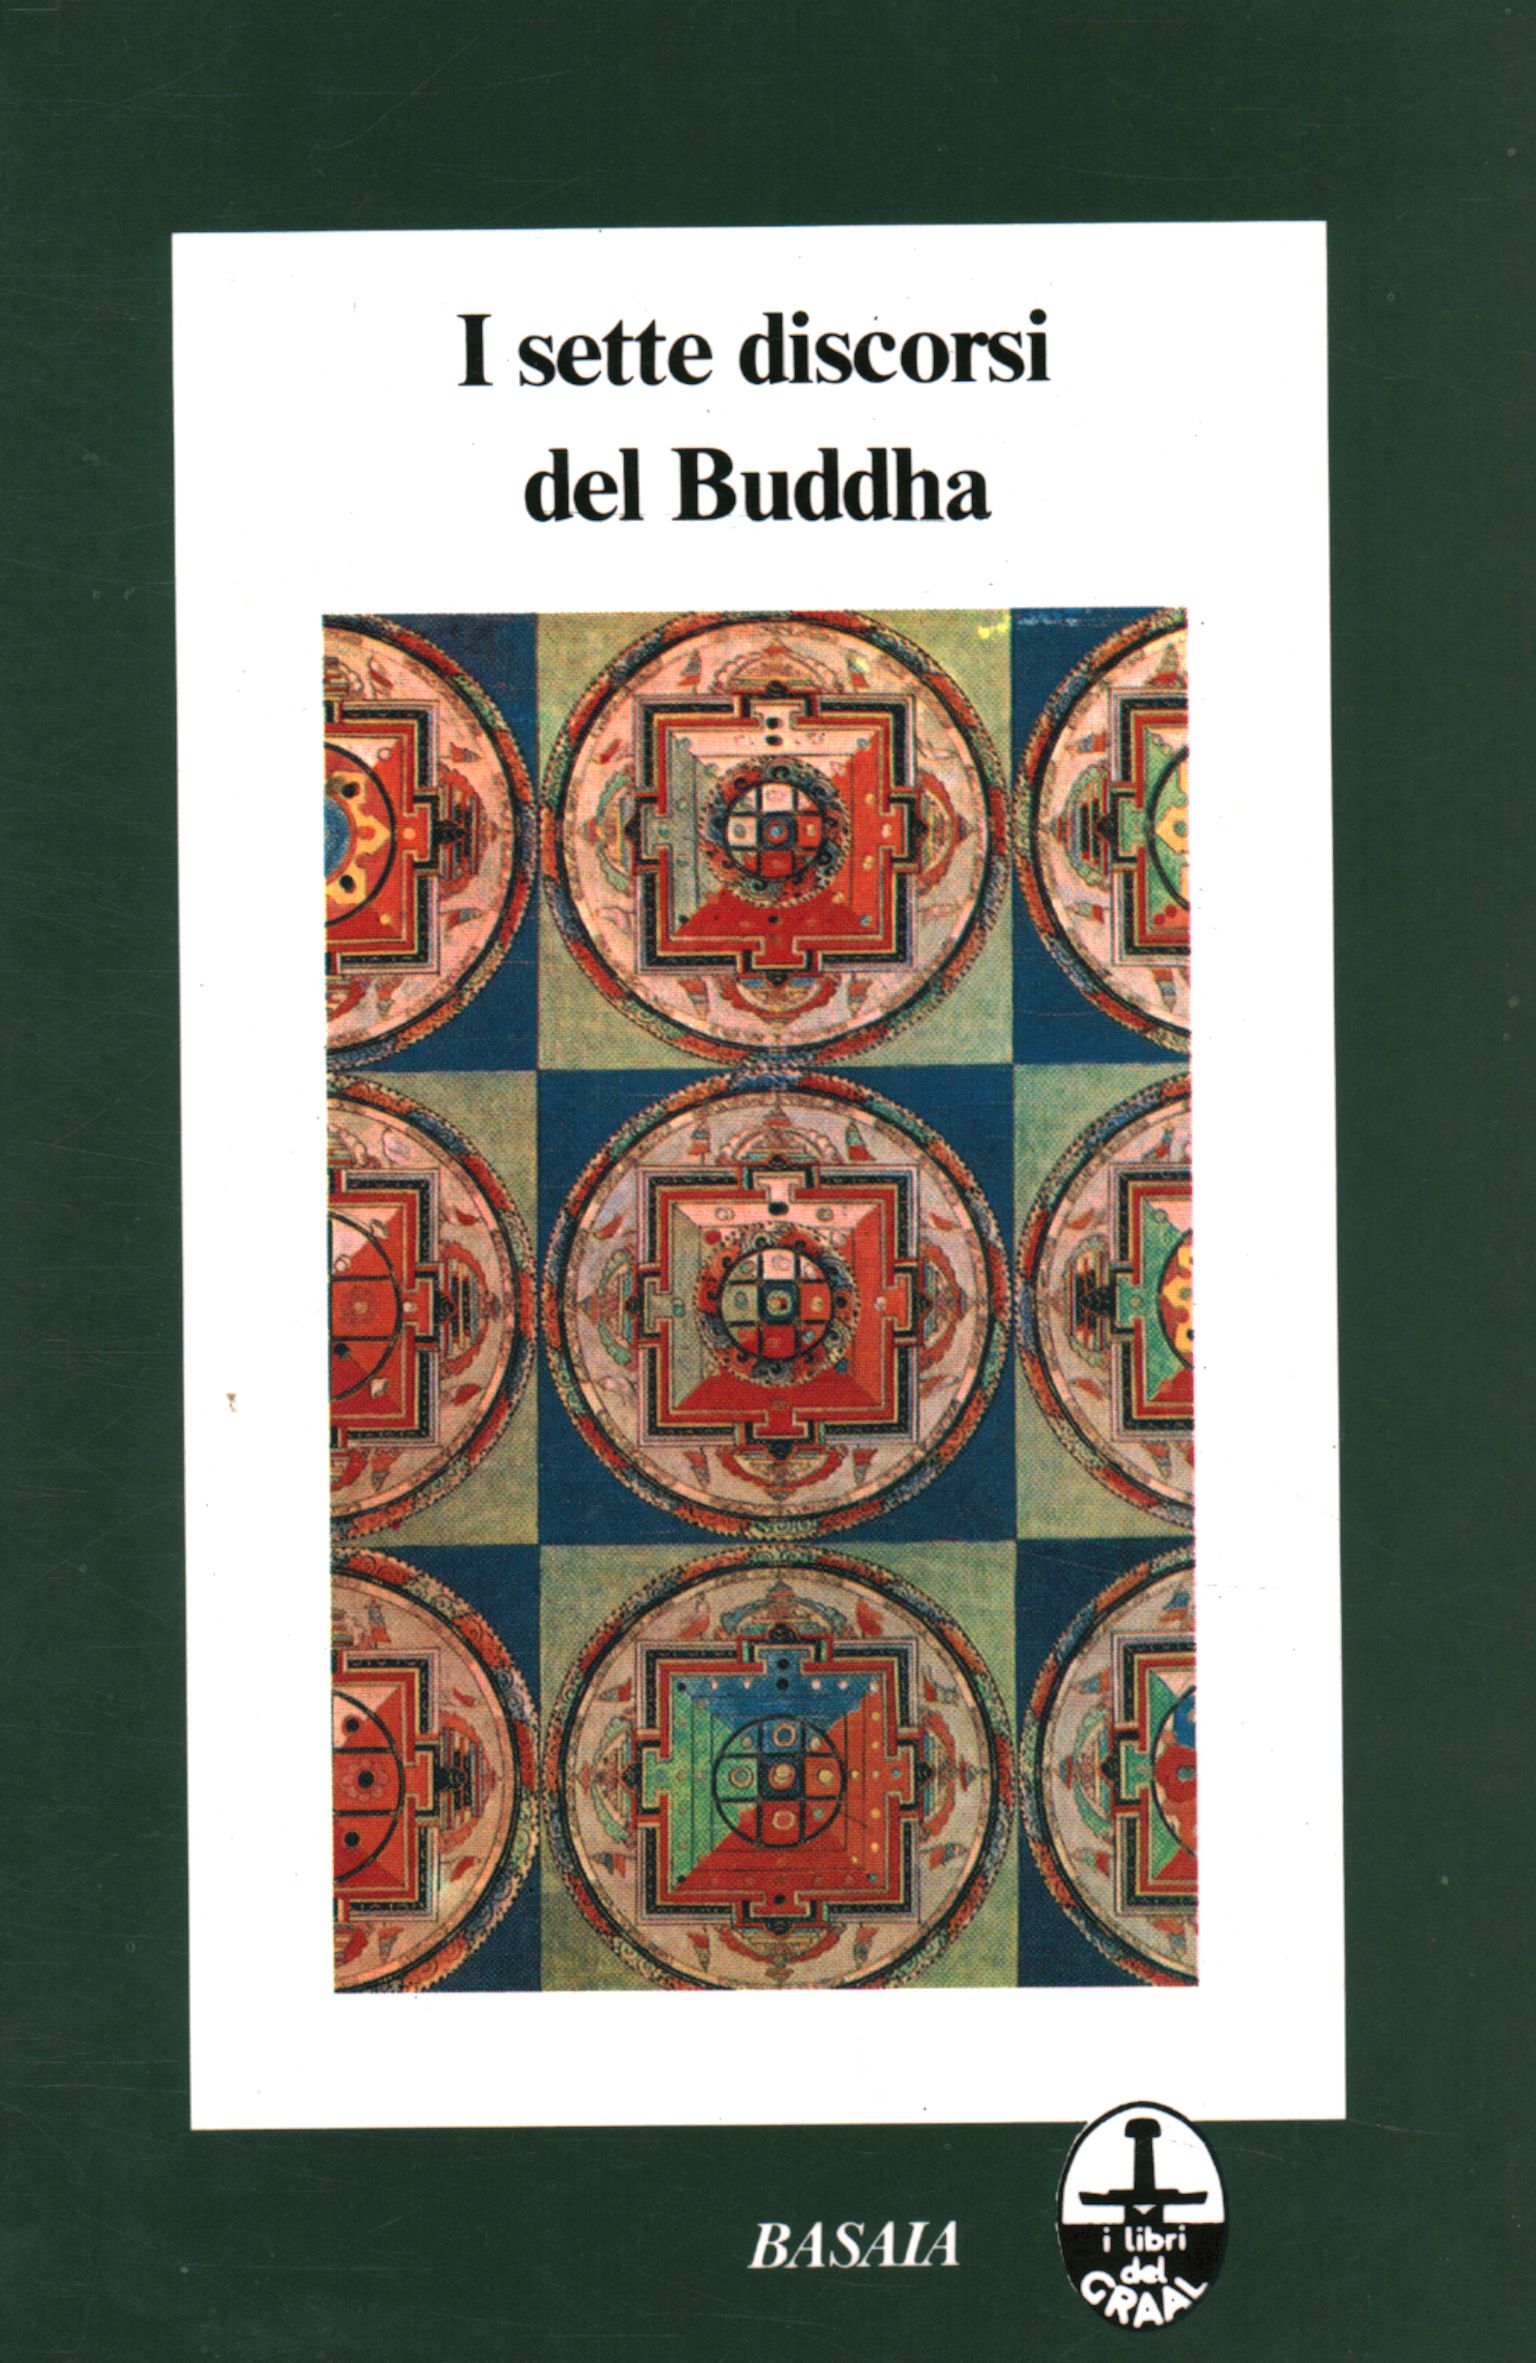 Die sieben Lehrreden des Buddha